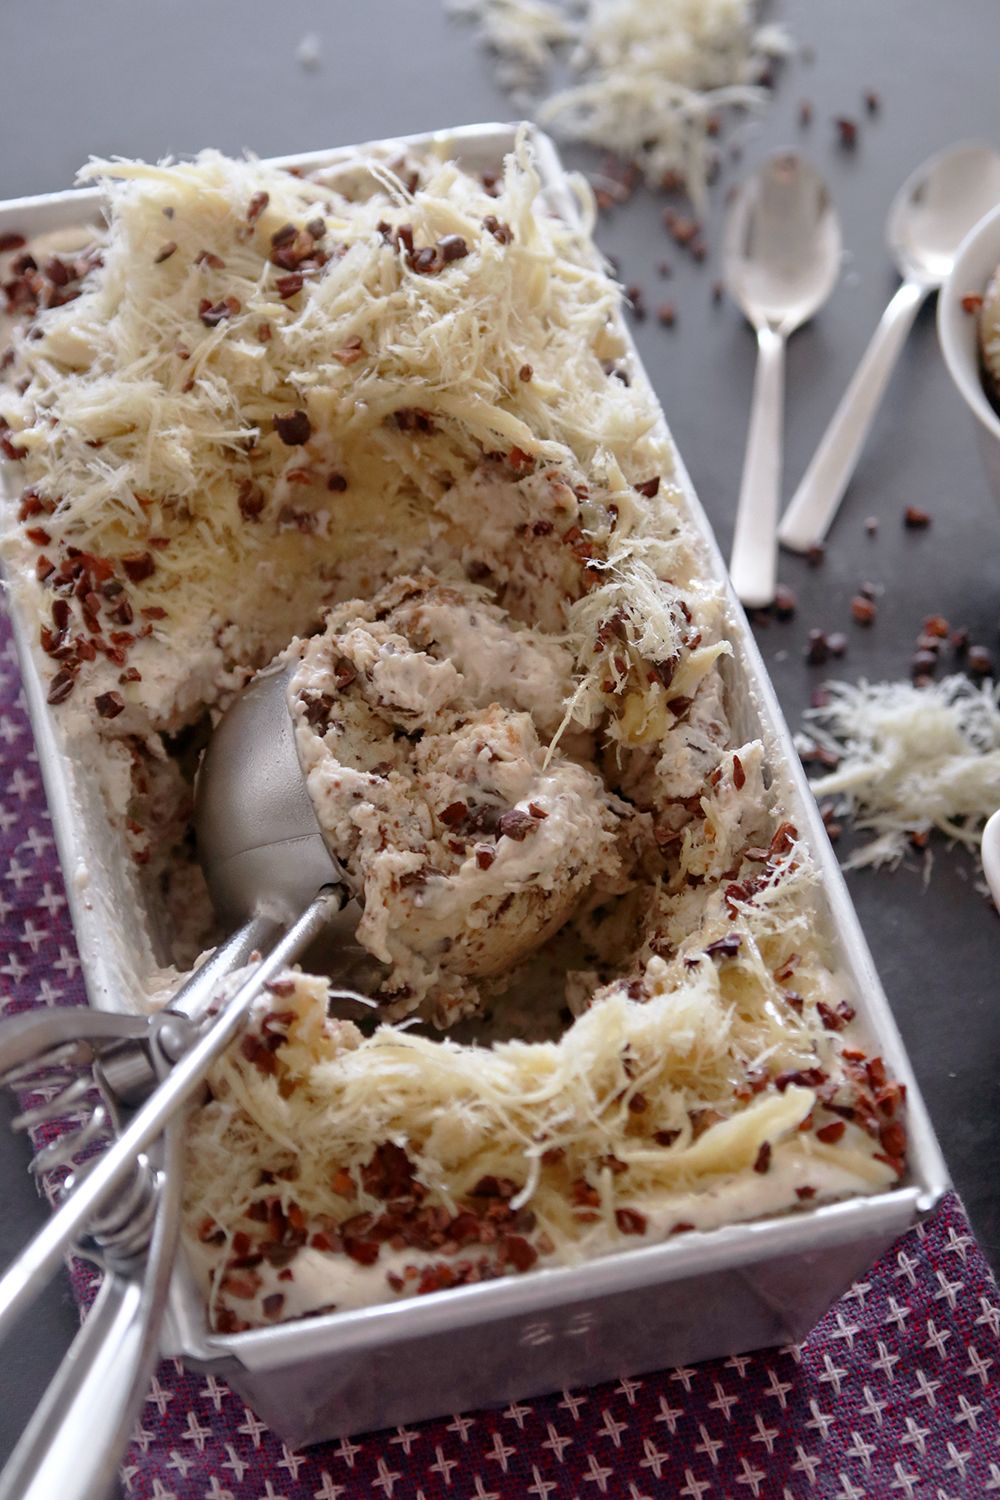 גלידת חלבה ושוקולד צ'יפס | צילום: נטלי לוין